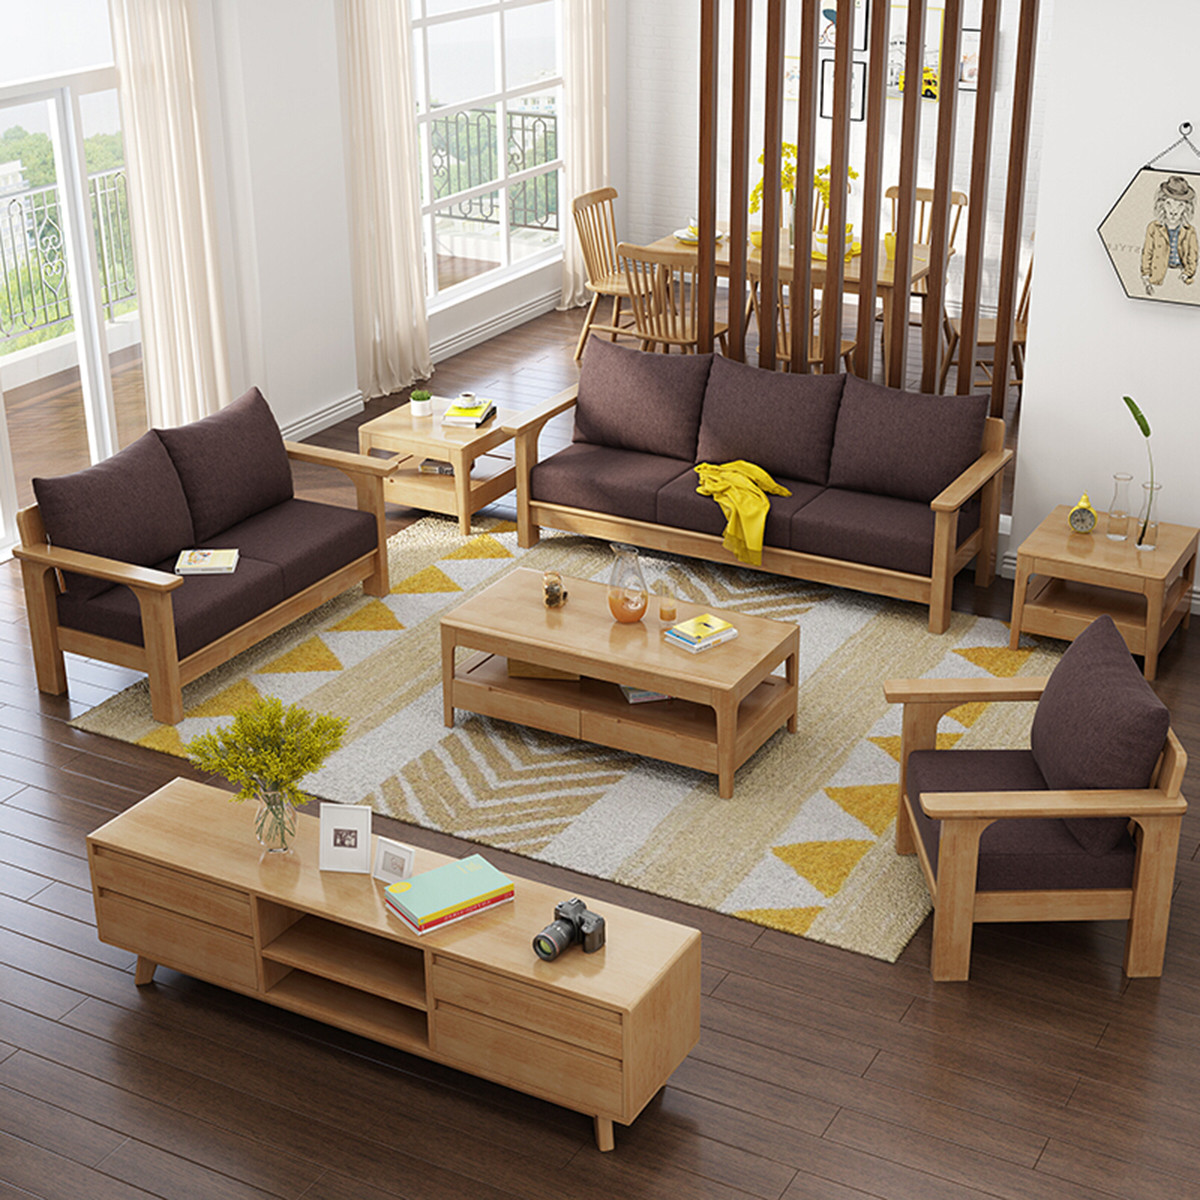 原木实木沙发组合北欧原木沙发客厅家具现代简约沙发组合tb-23#沙发